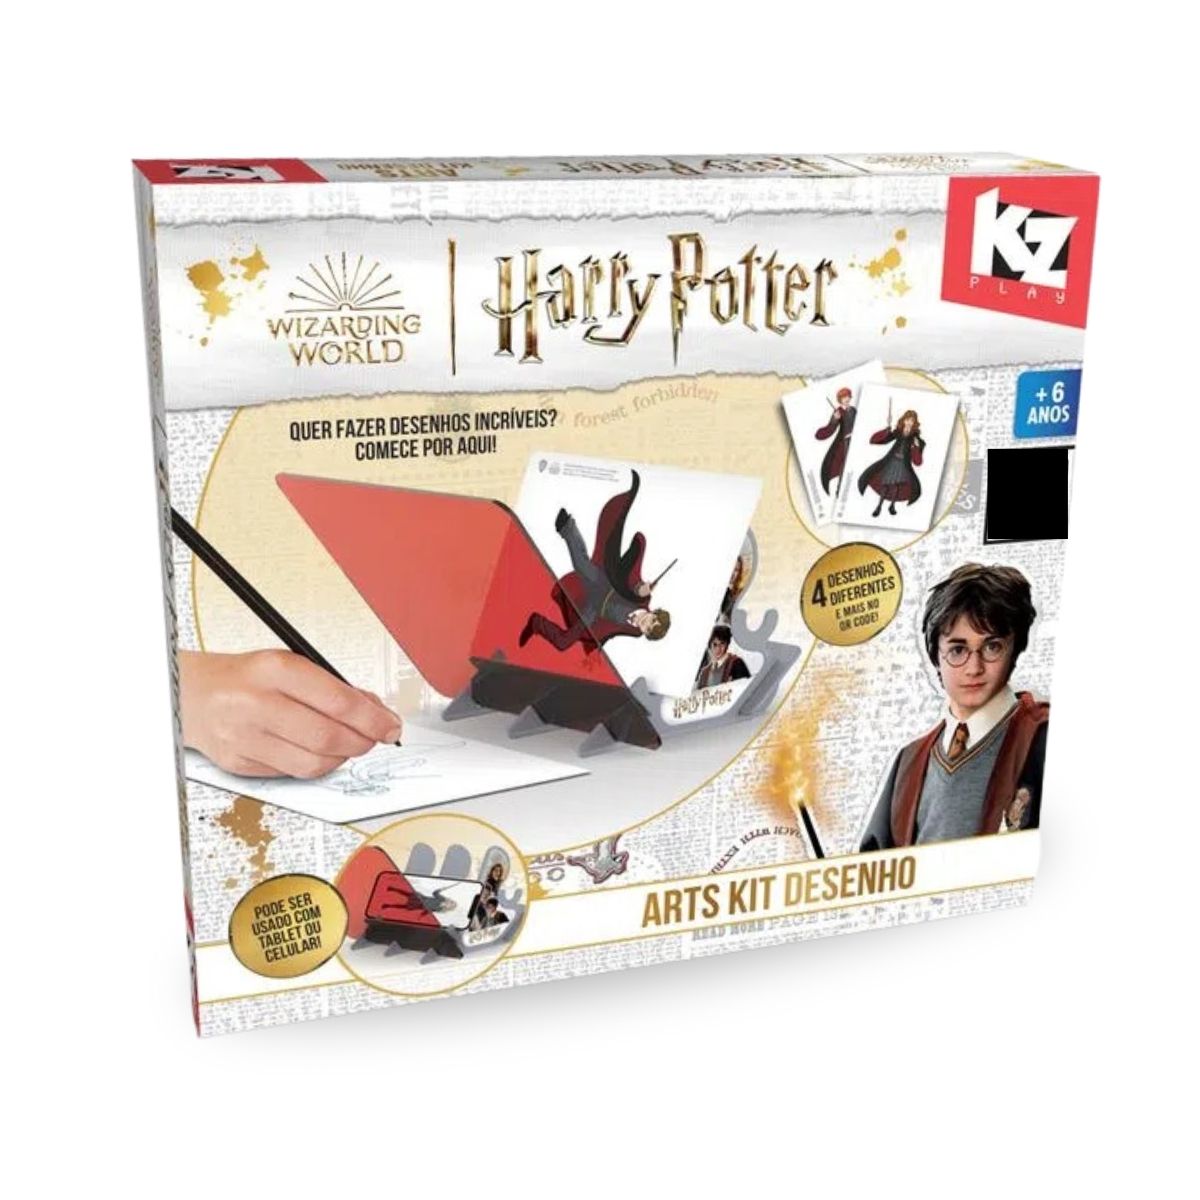 Jogo Trilha - Harry Potter - Mary Toys Brinquedos